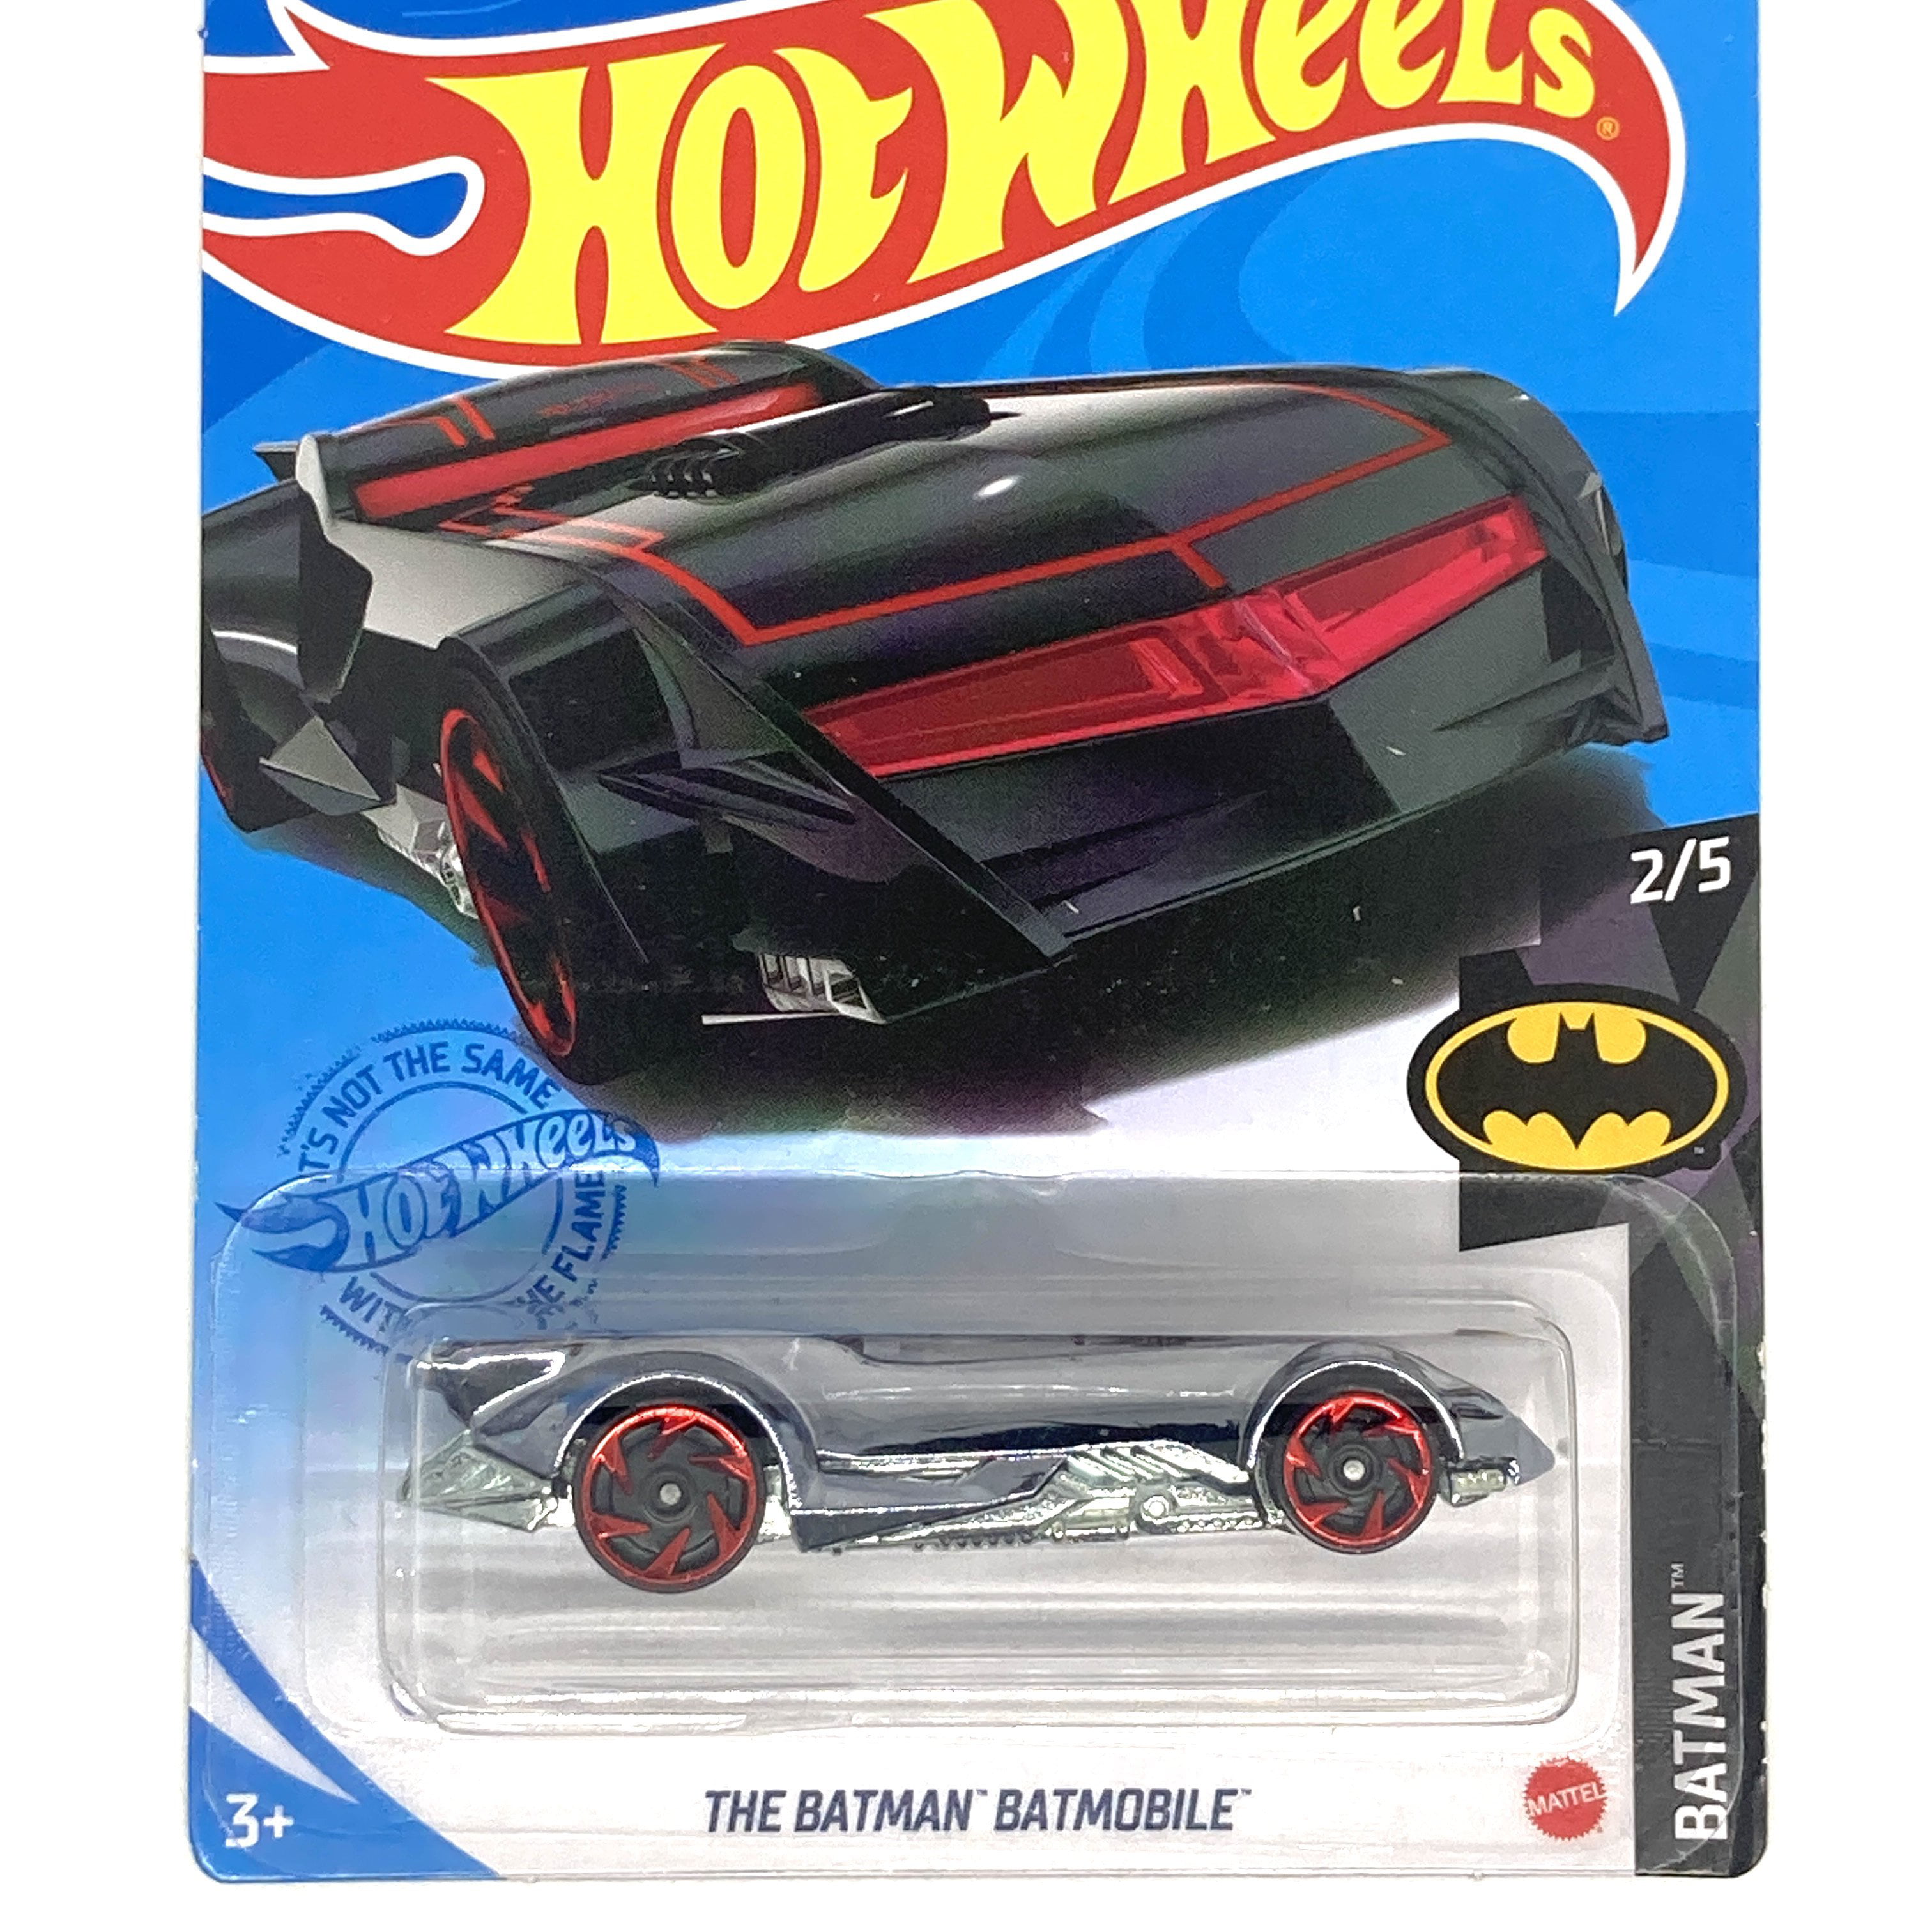 Hot Wheels DC Comics Die-Cast Batman Batmobile Choose Your Batmobile Ages 3+